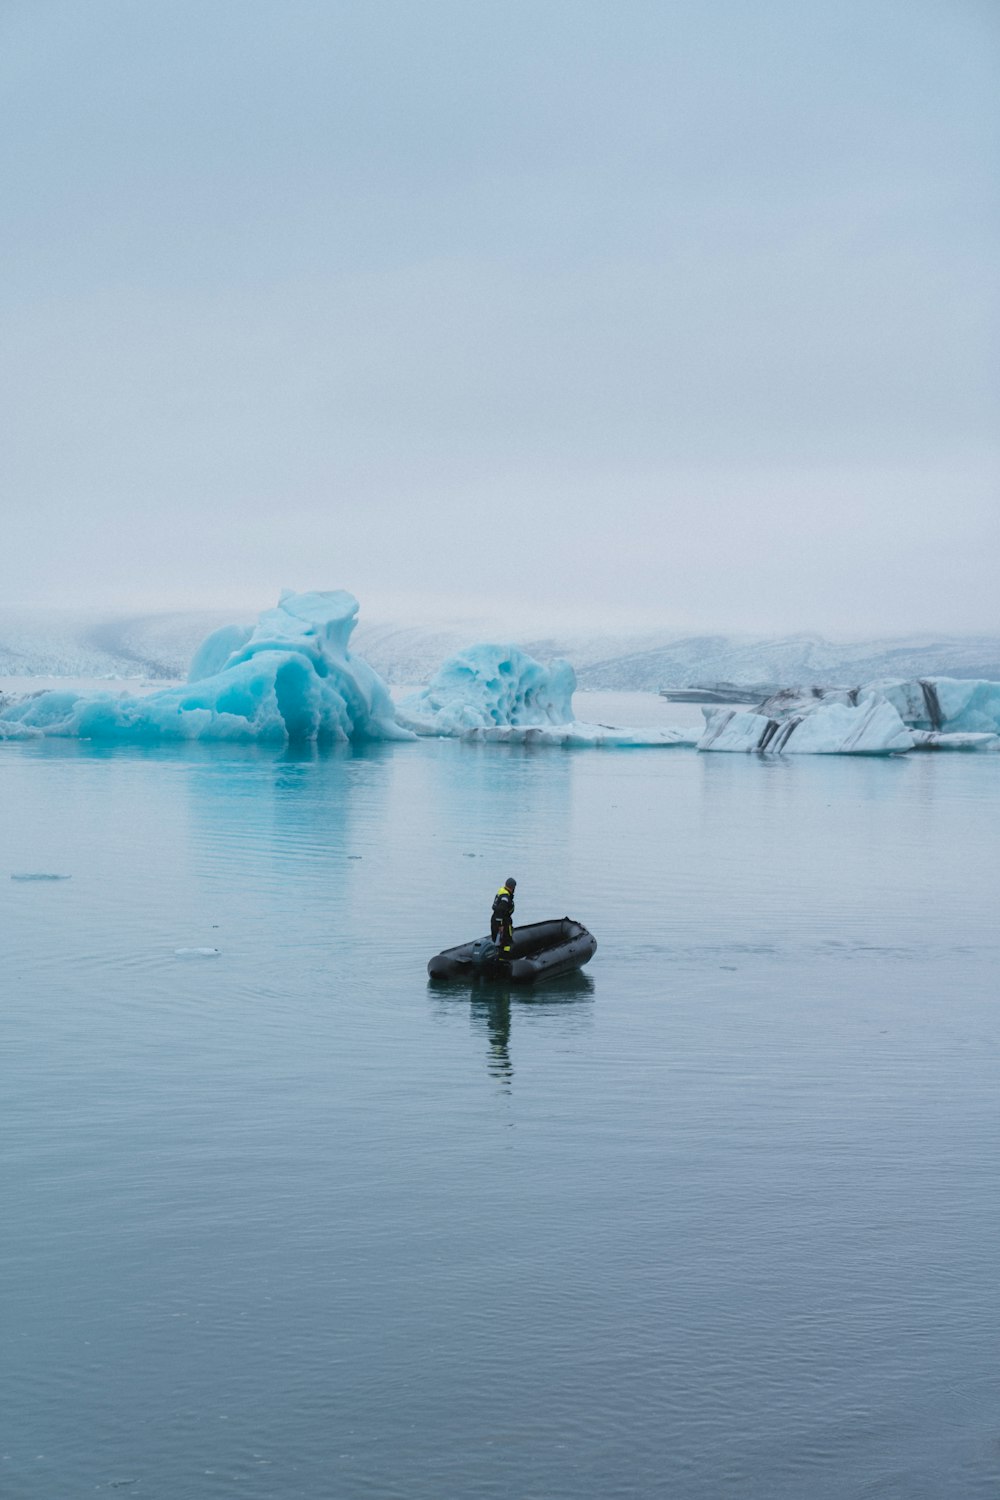 Ein Mann auf einem Boot im Wasser in der Nähe von Eisbergen